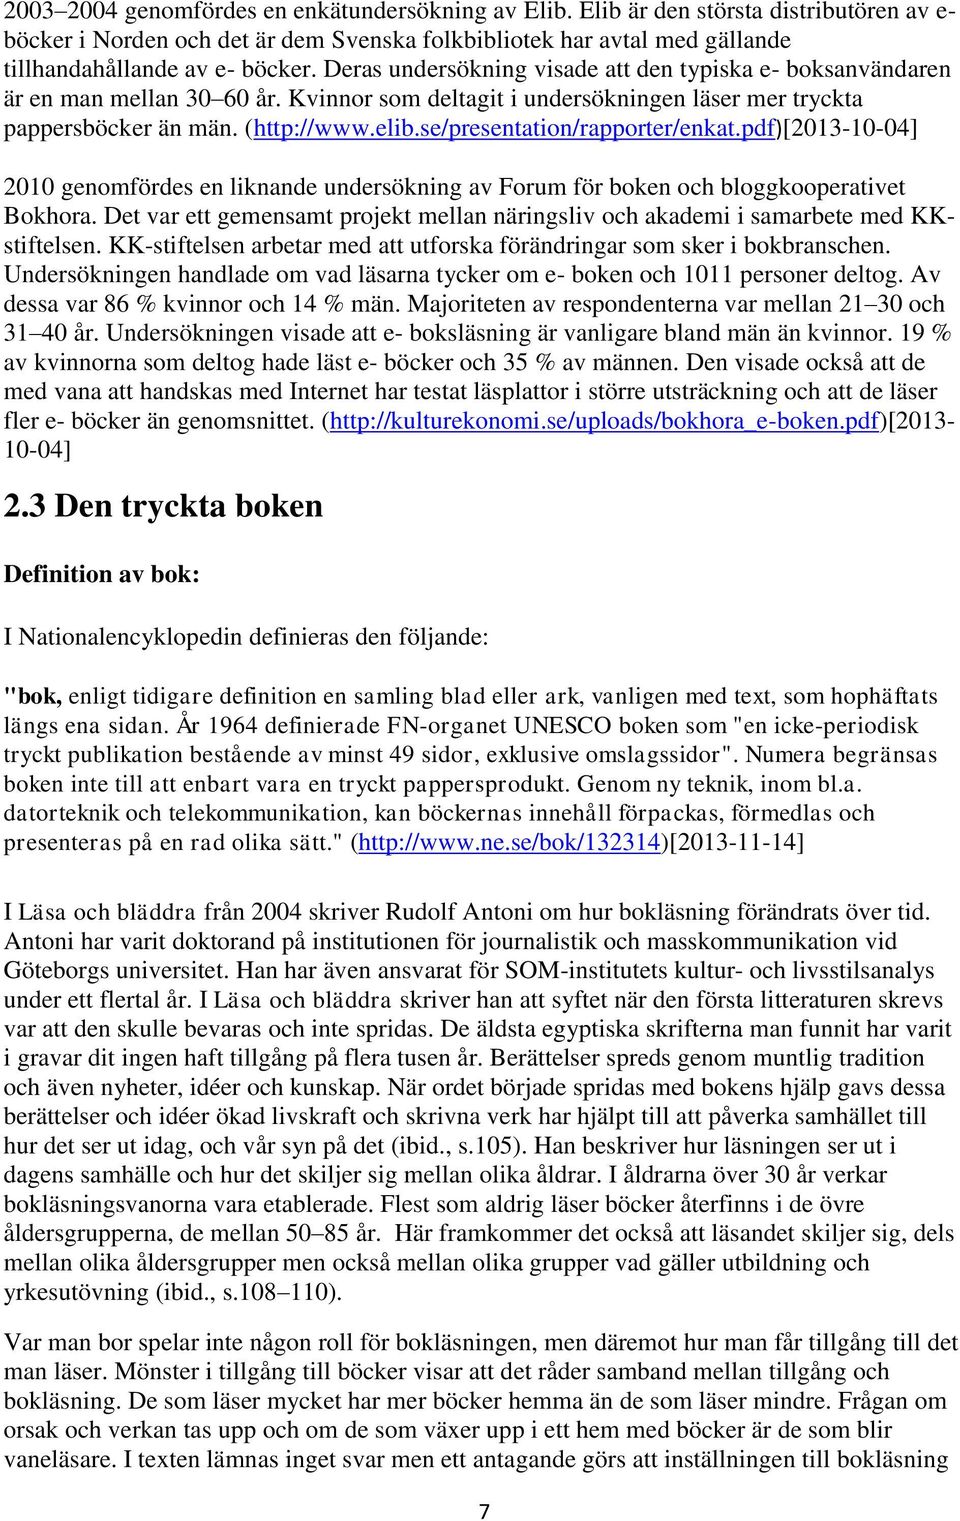 se/presentation/rapporter/enkat.pdf)[2013-10-04] 2010 genomfördes en liknande undersökning av Forum för boken och bloggkooperativet Bokhora.